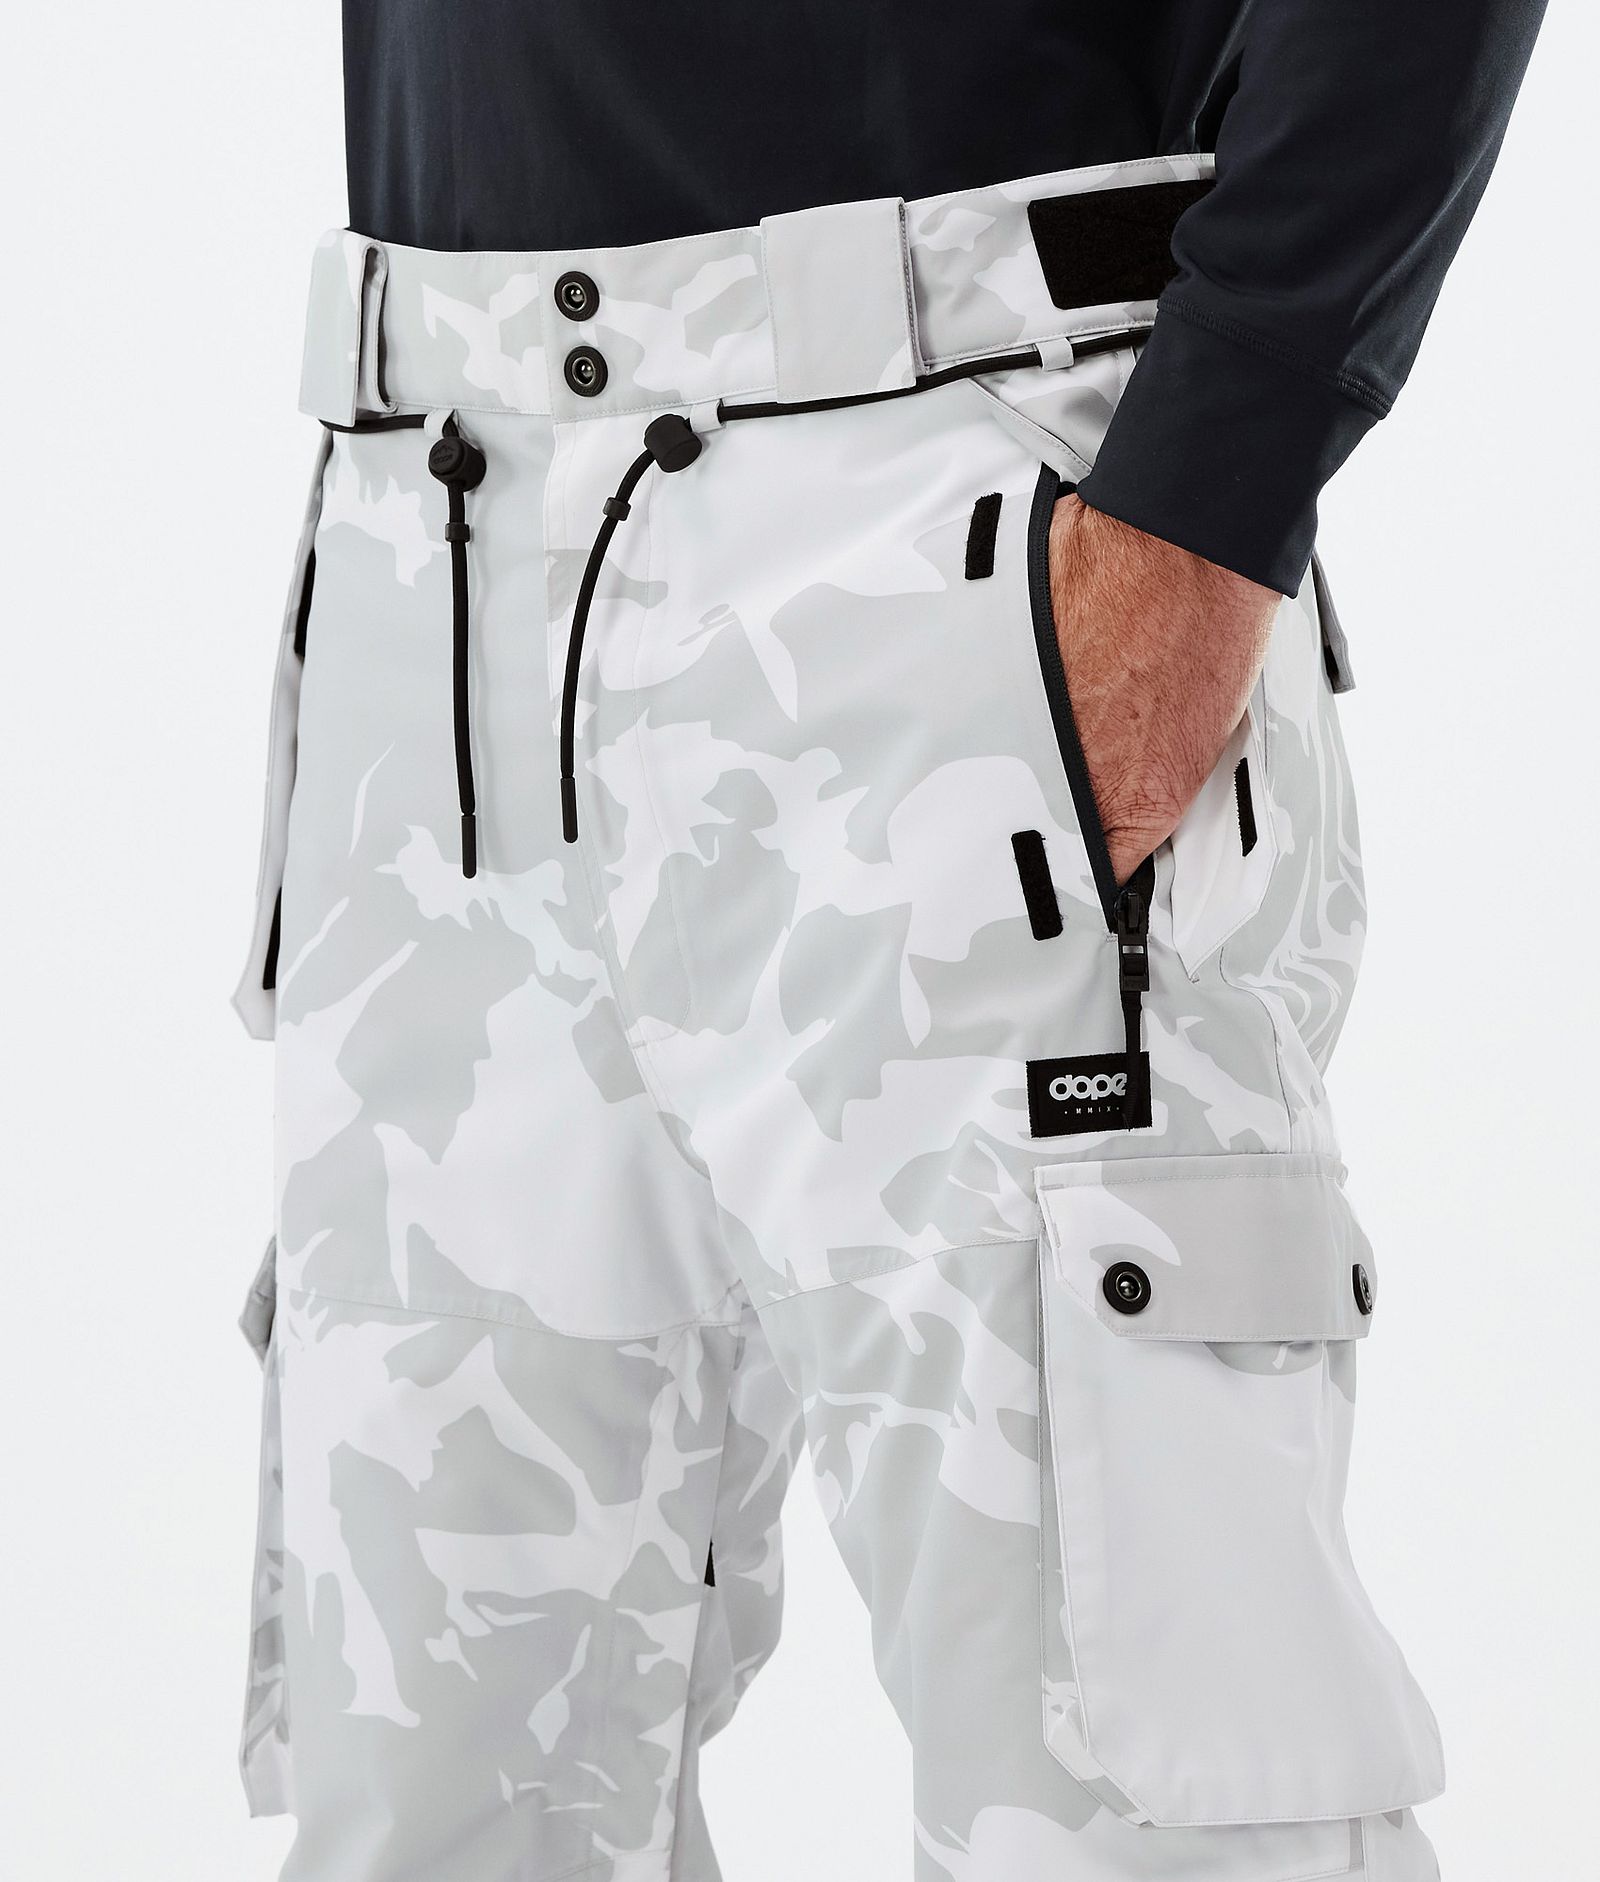 Iconic Pantalones Esquí Hombre Grey Camo